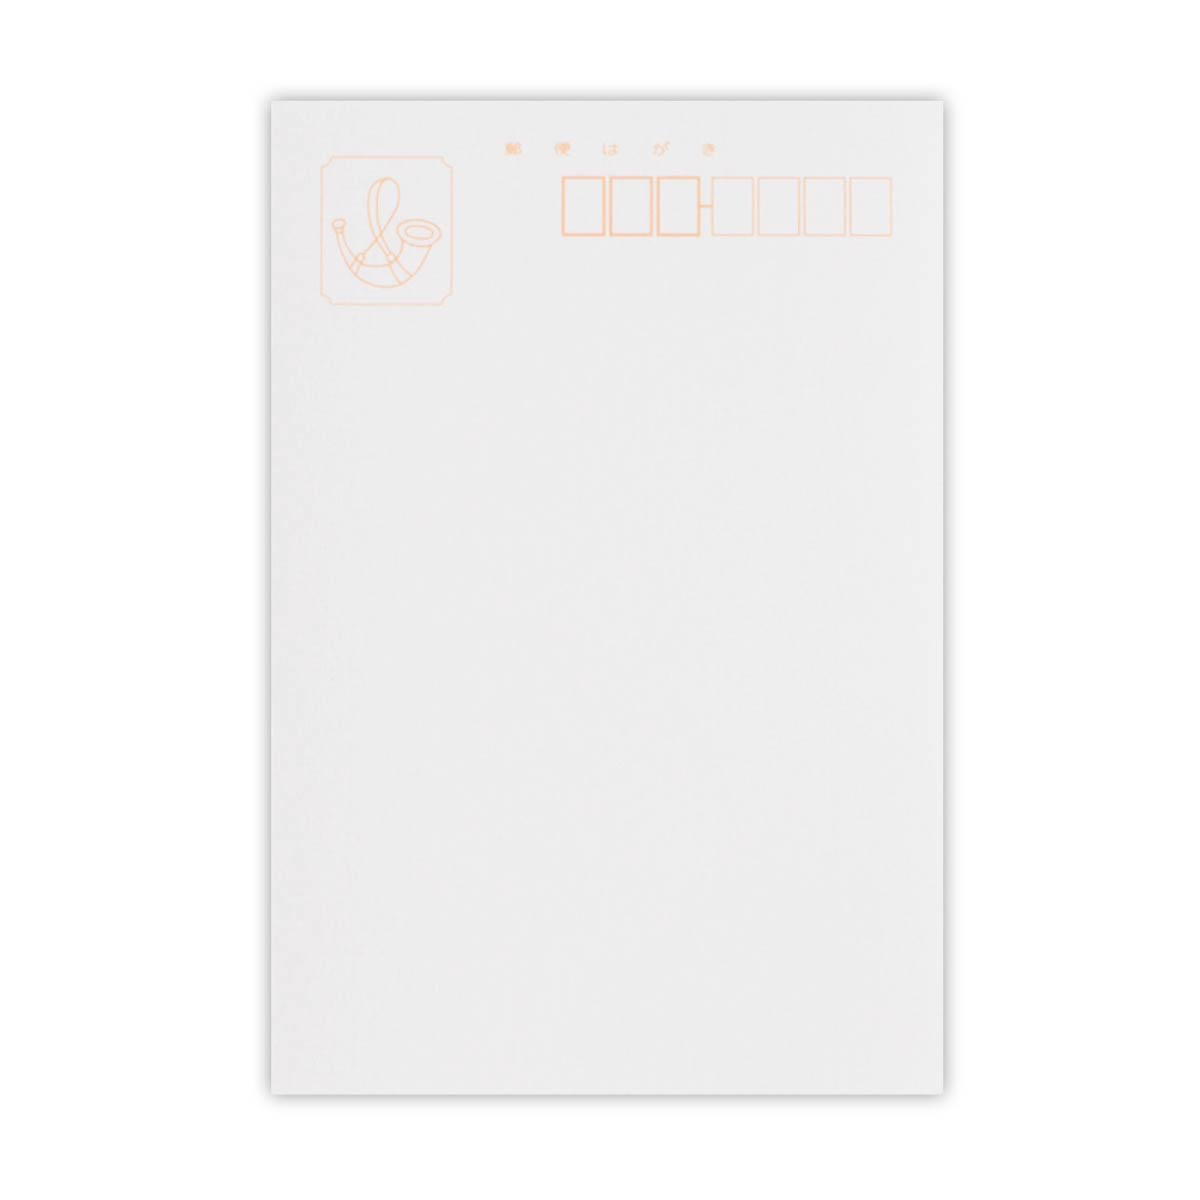  Maruman открытка Maruman бумага для рисования Special толщина 40 листов (S141C)